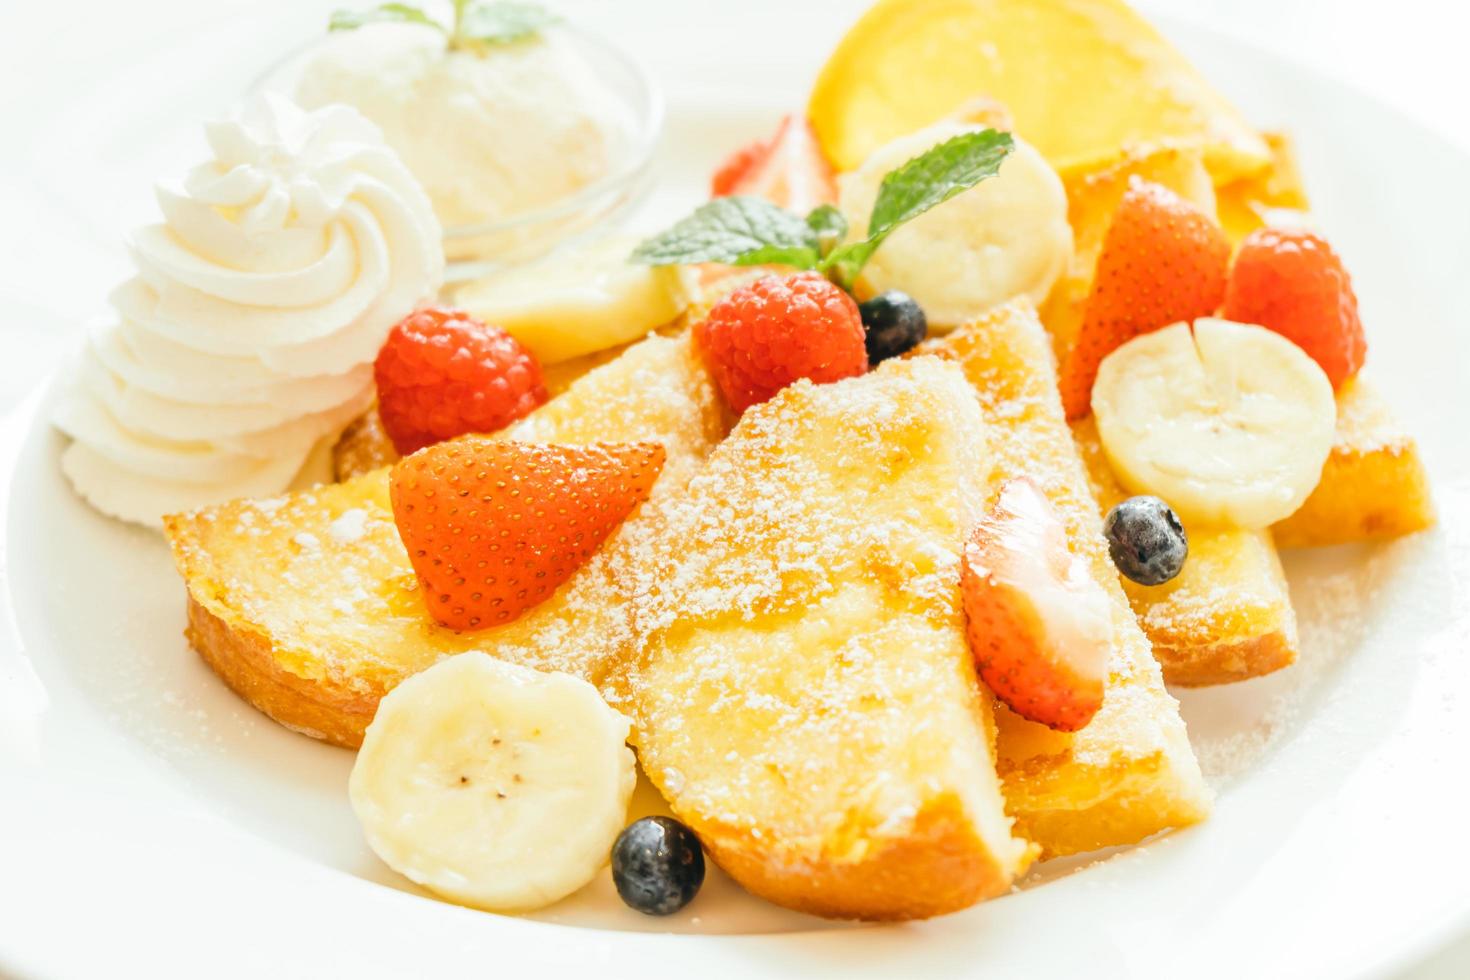 pannenkoek en brood toast met gemengd fruit foto